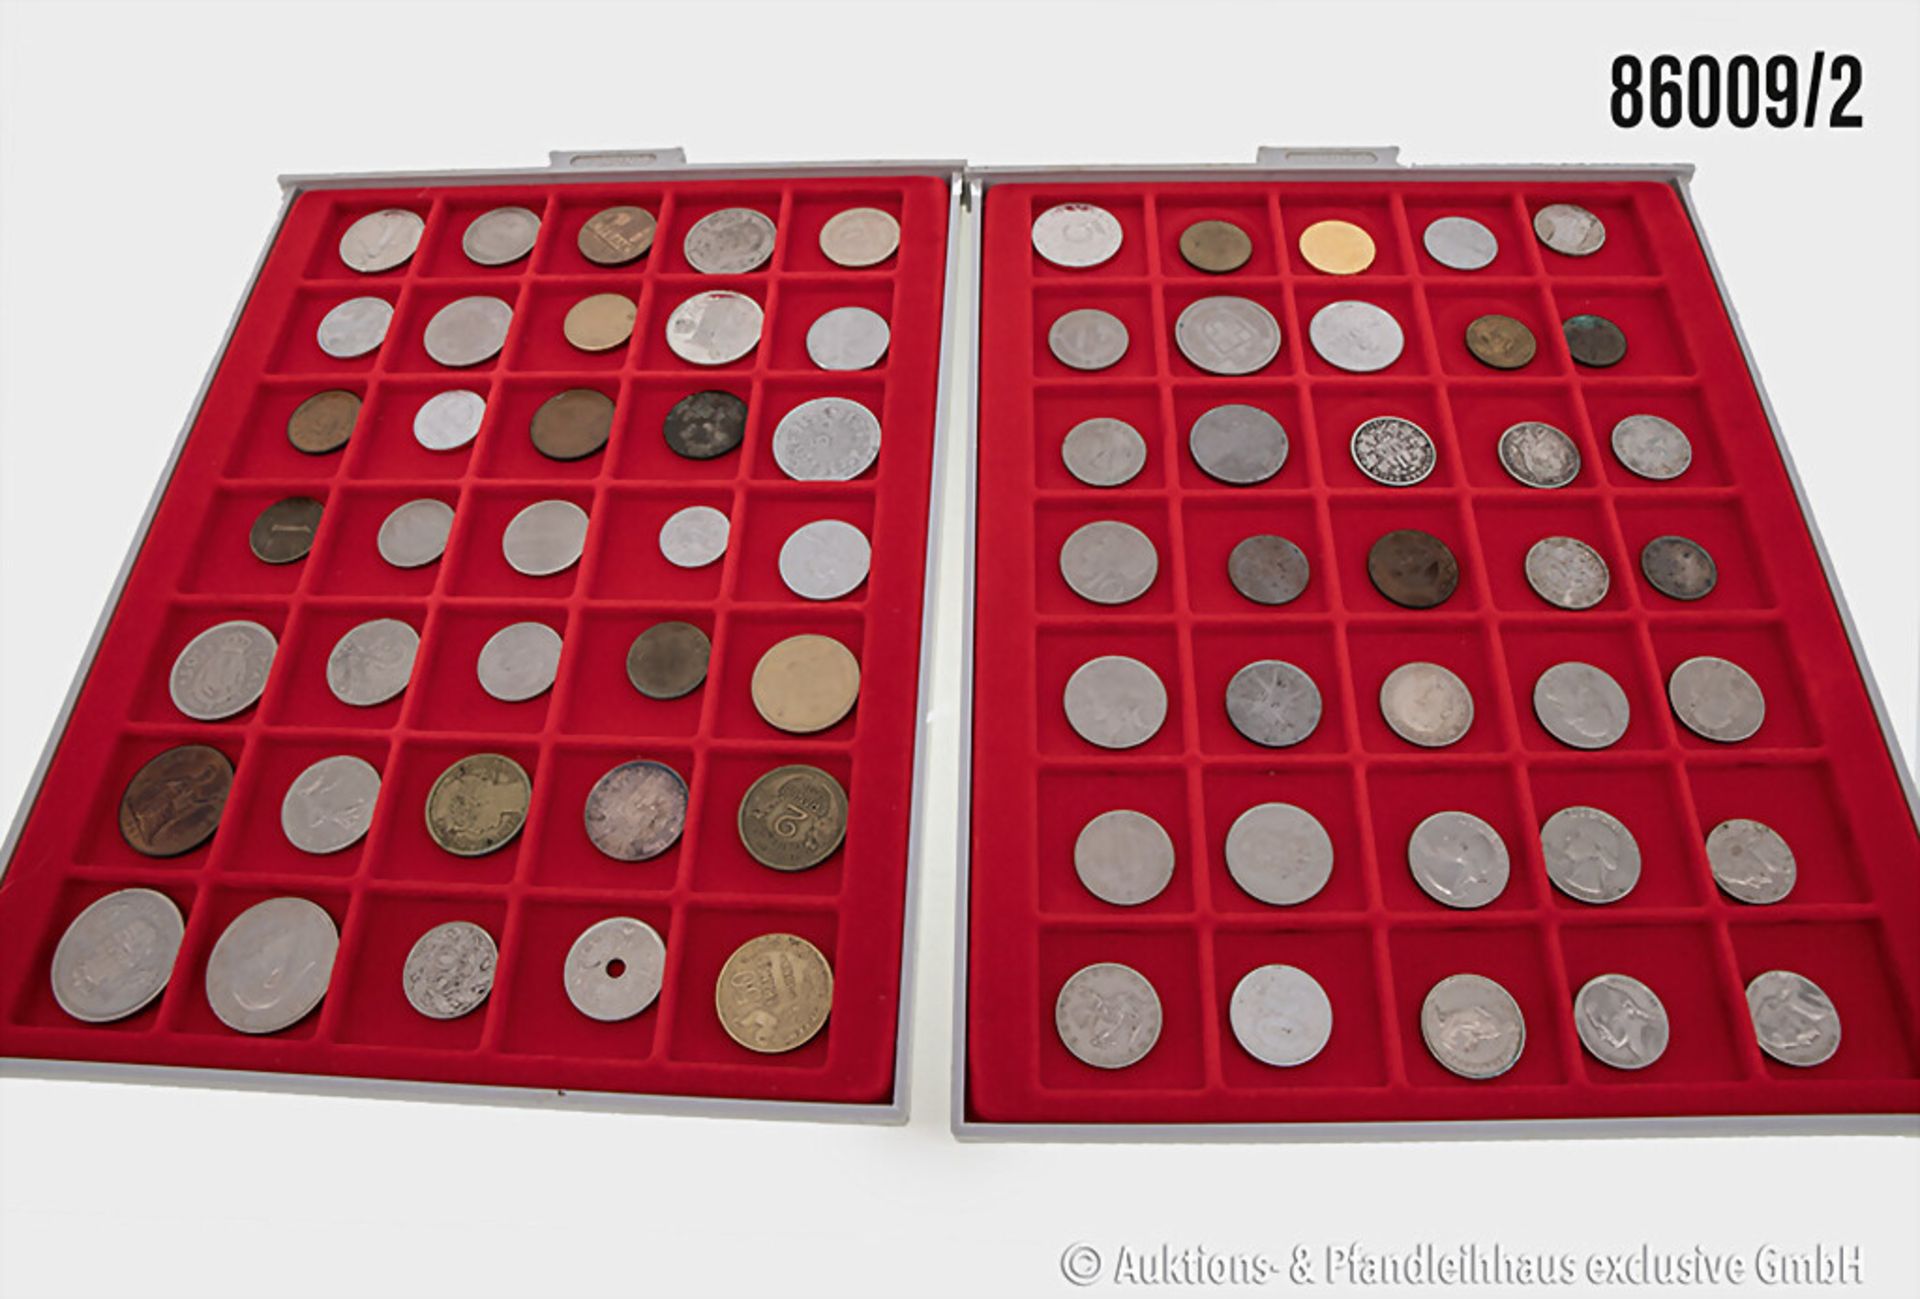 Konvolut Münzen in 6 Lindner Münzboxen, verschiedene Münzen Europa/Welt sowie 3 Münzen ... - Image 2 of 3